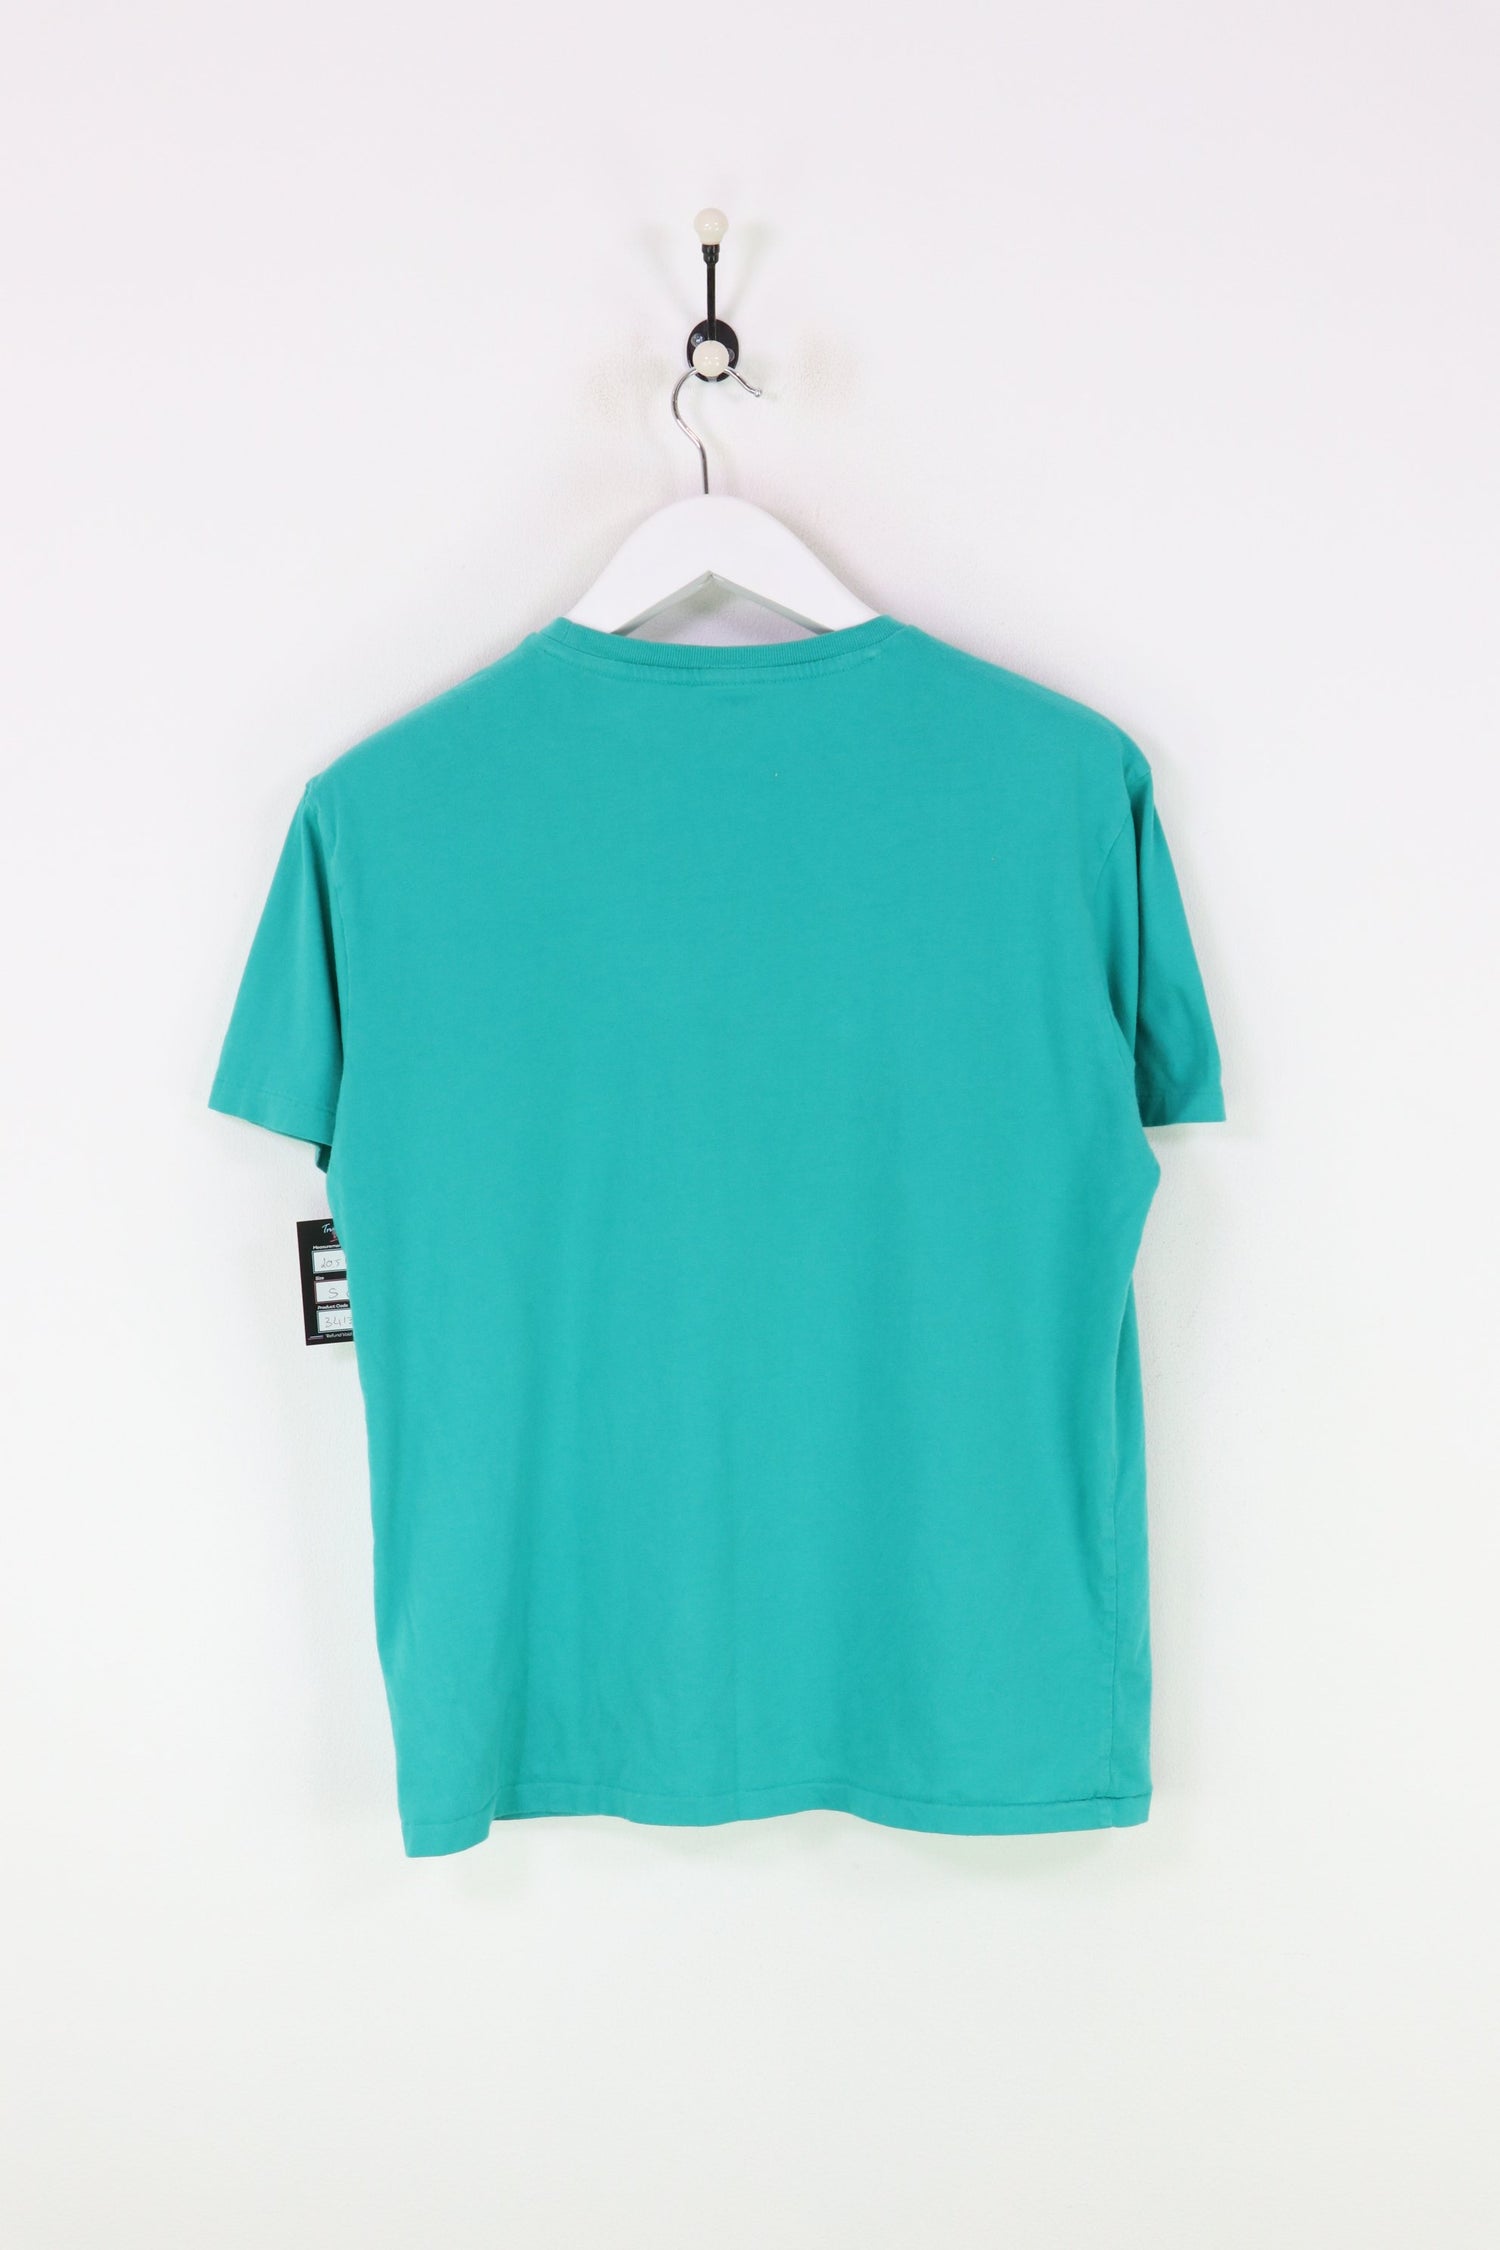 Ralph Lauren T-shirt Green Small